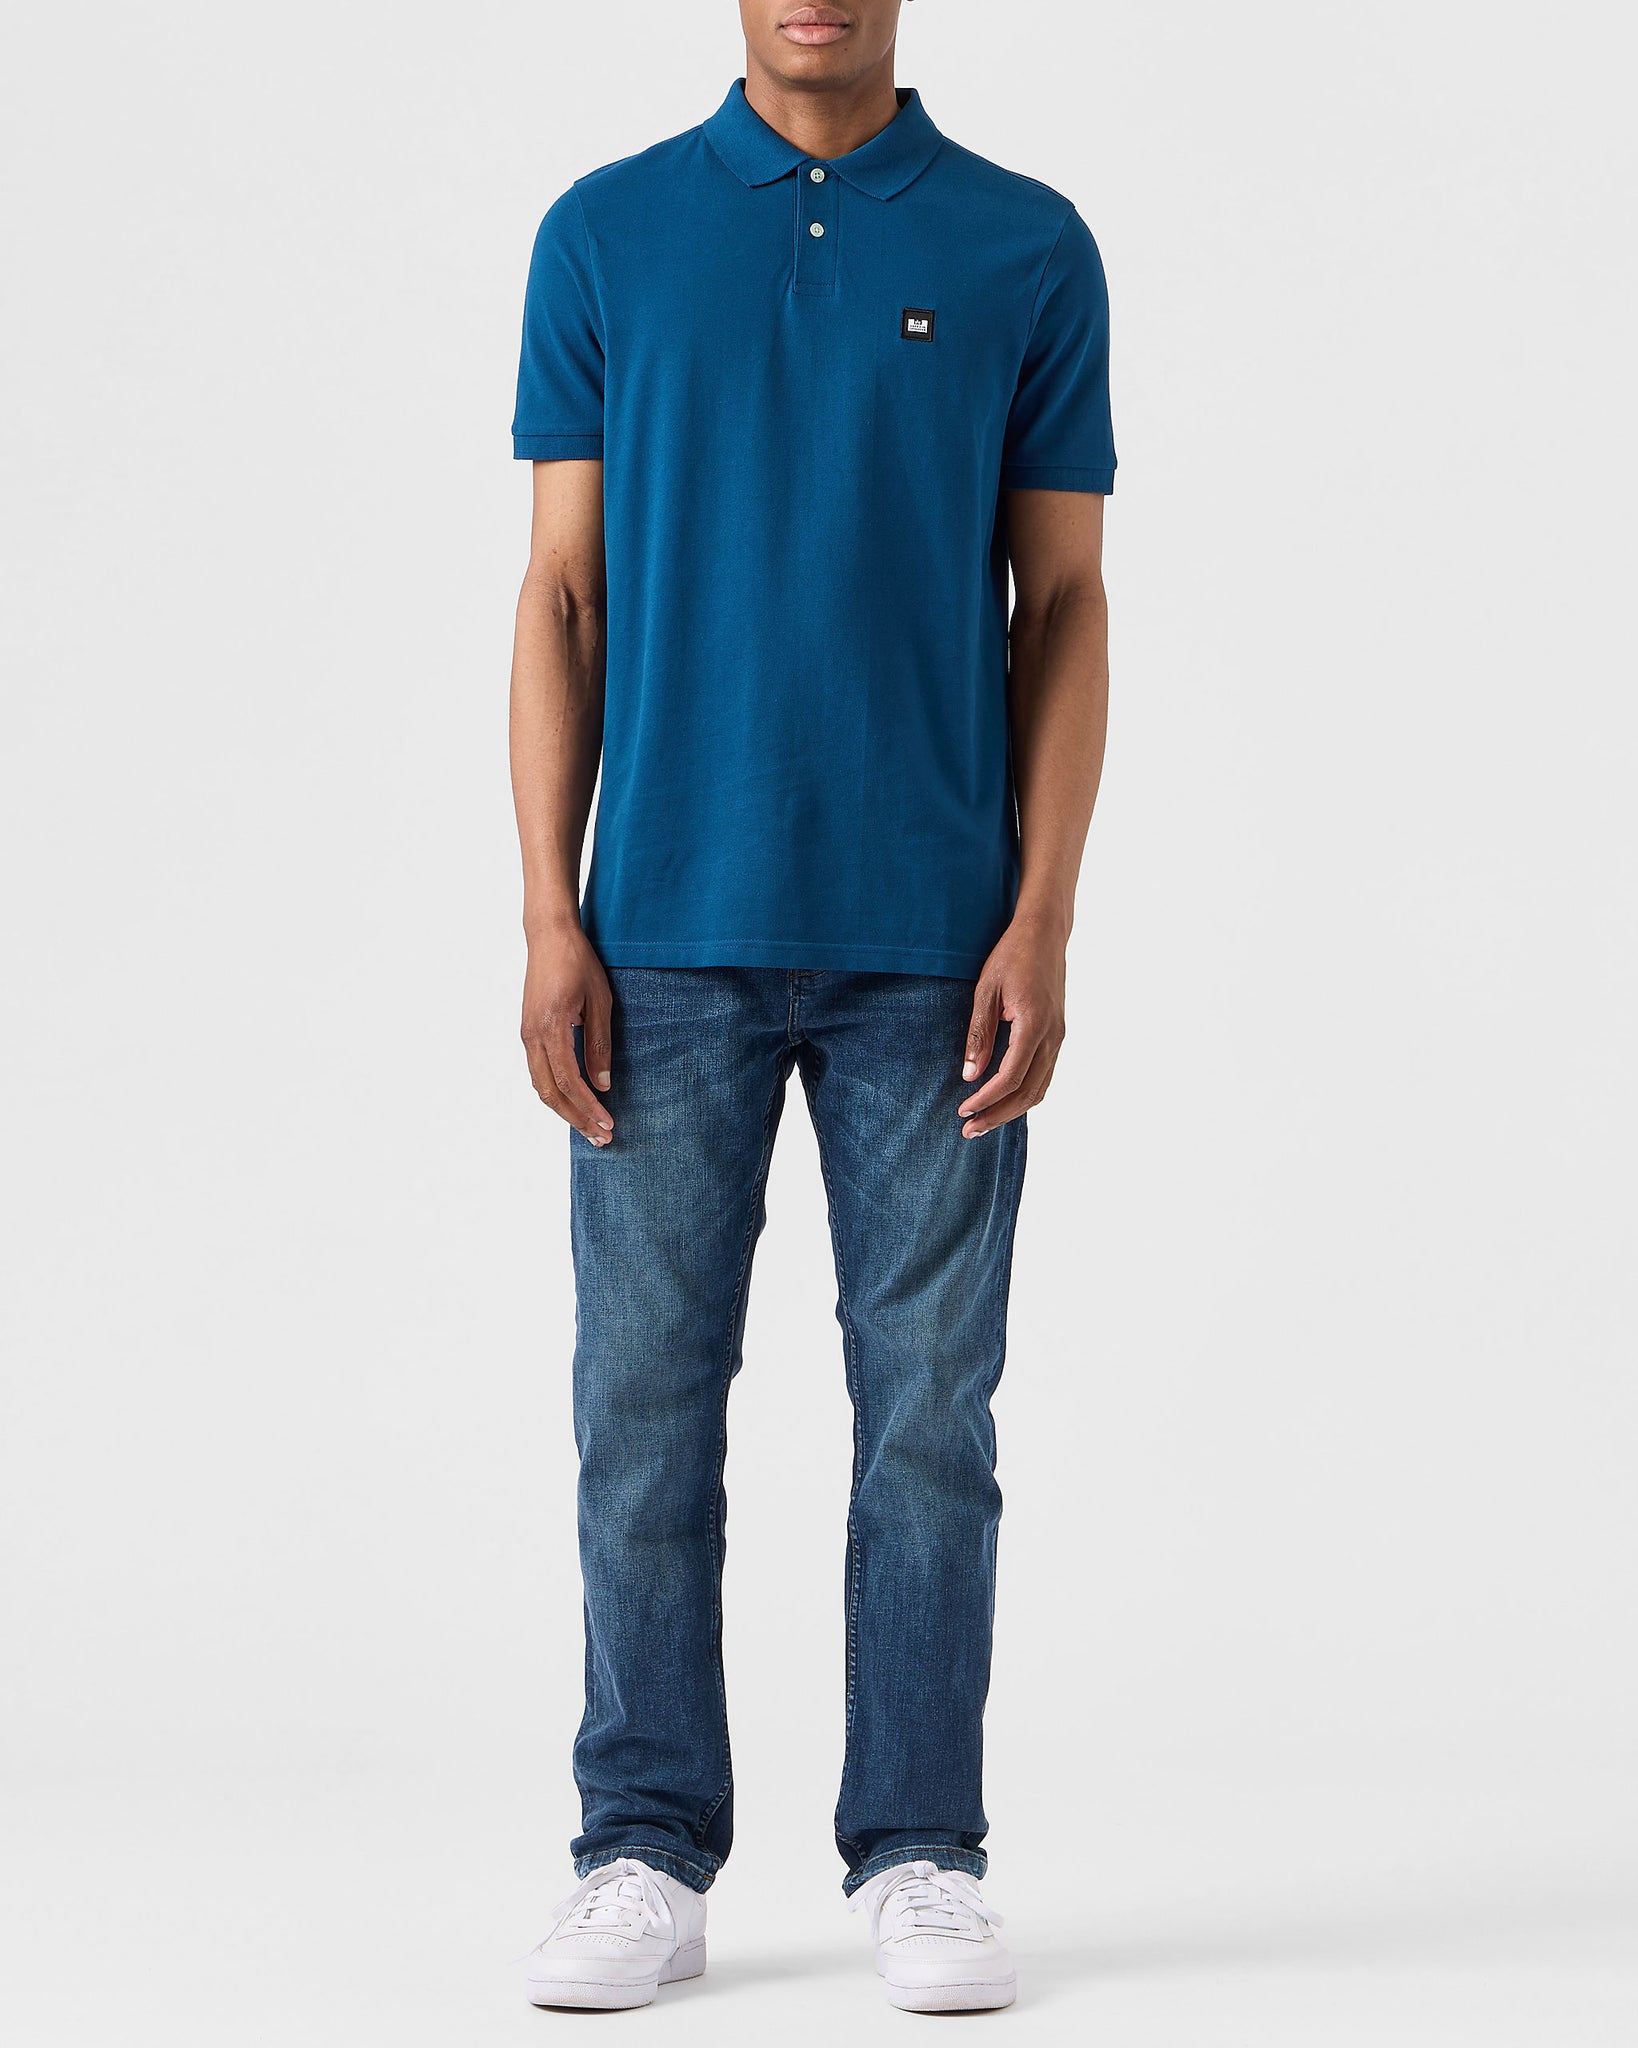 Caneiros Polo Shirt Juniper Blue